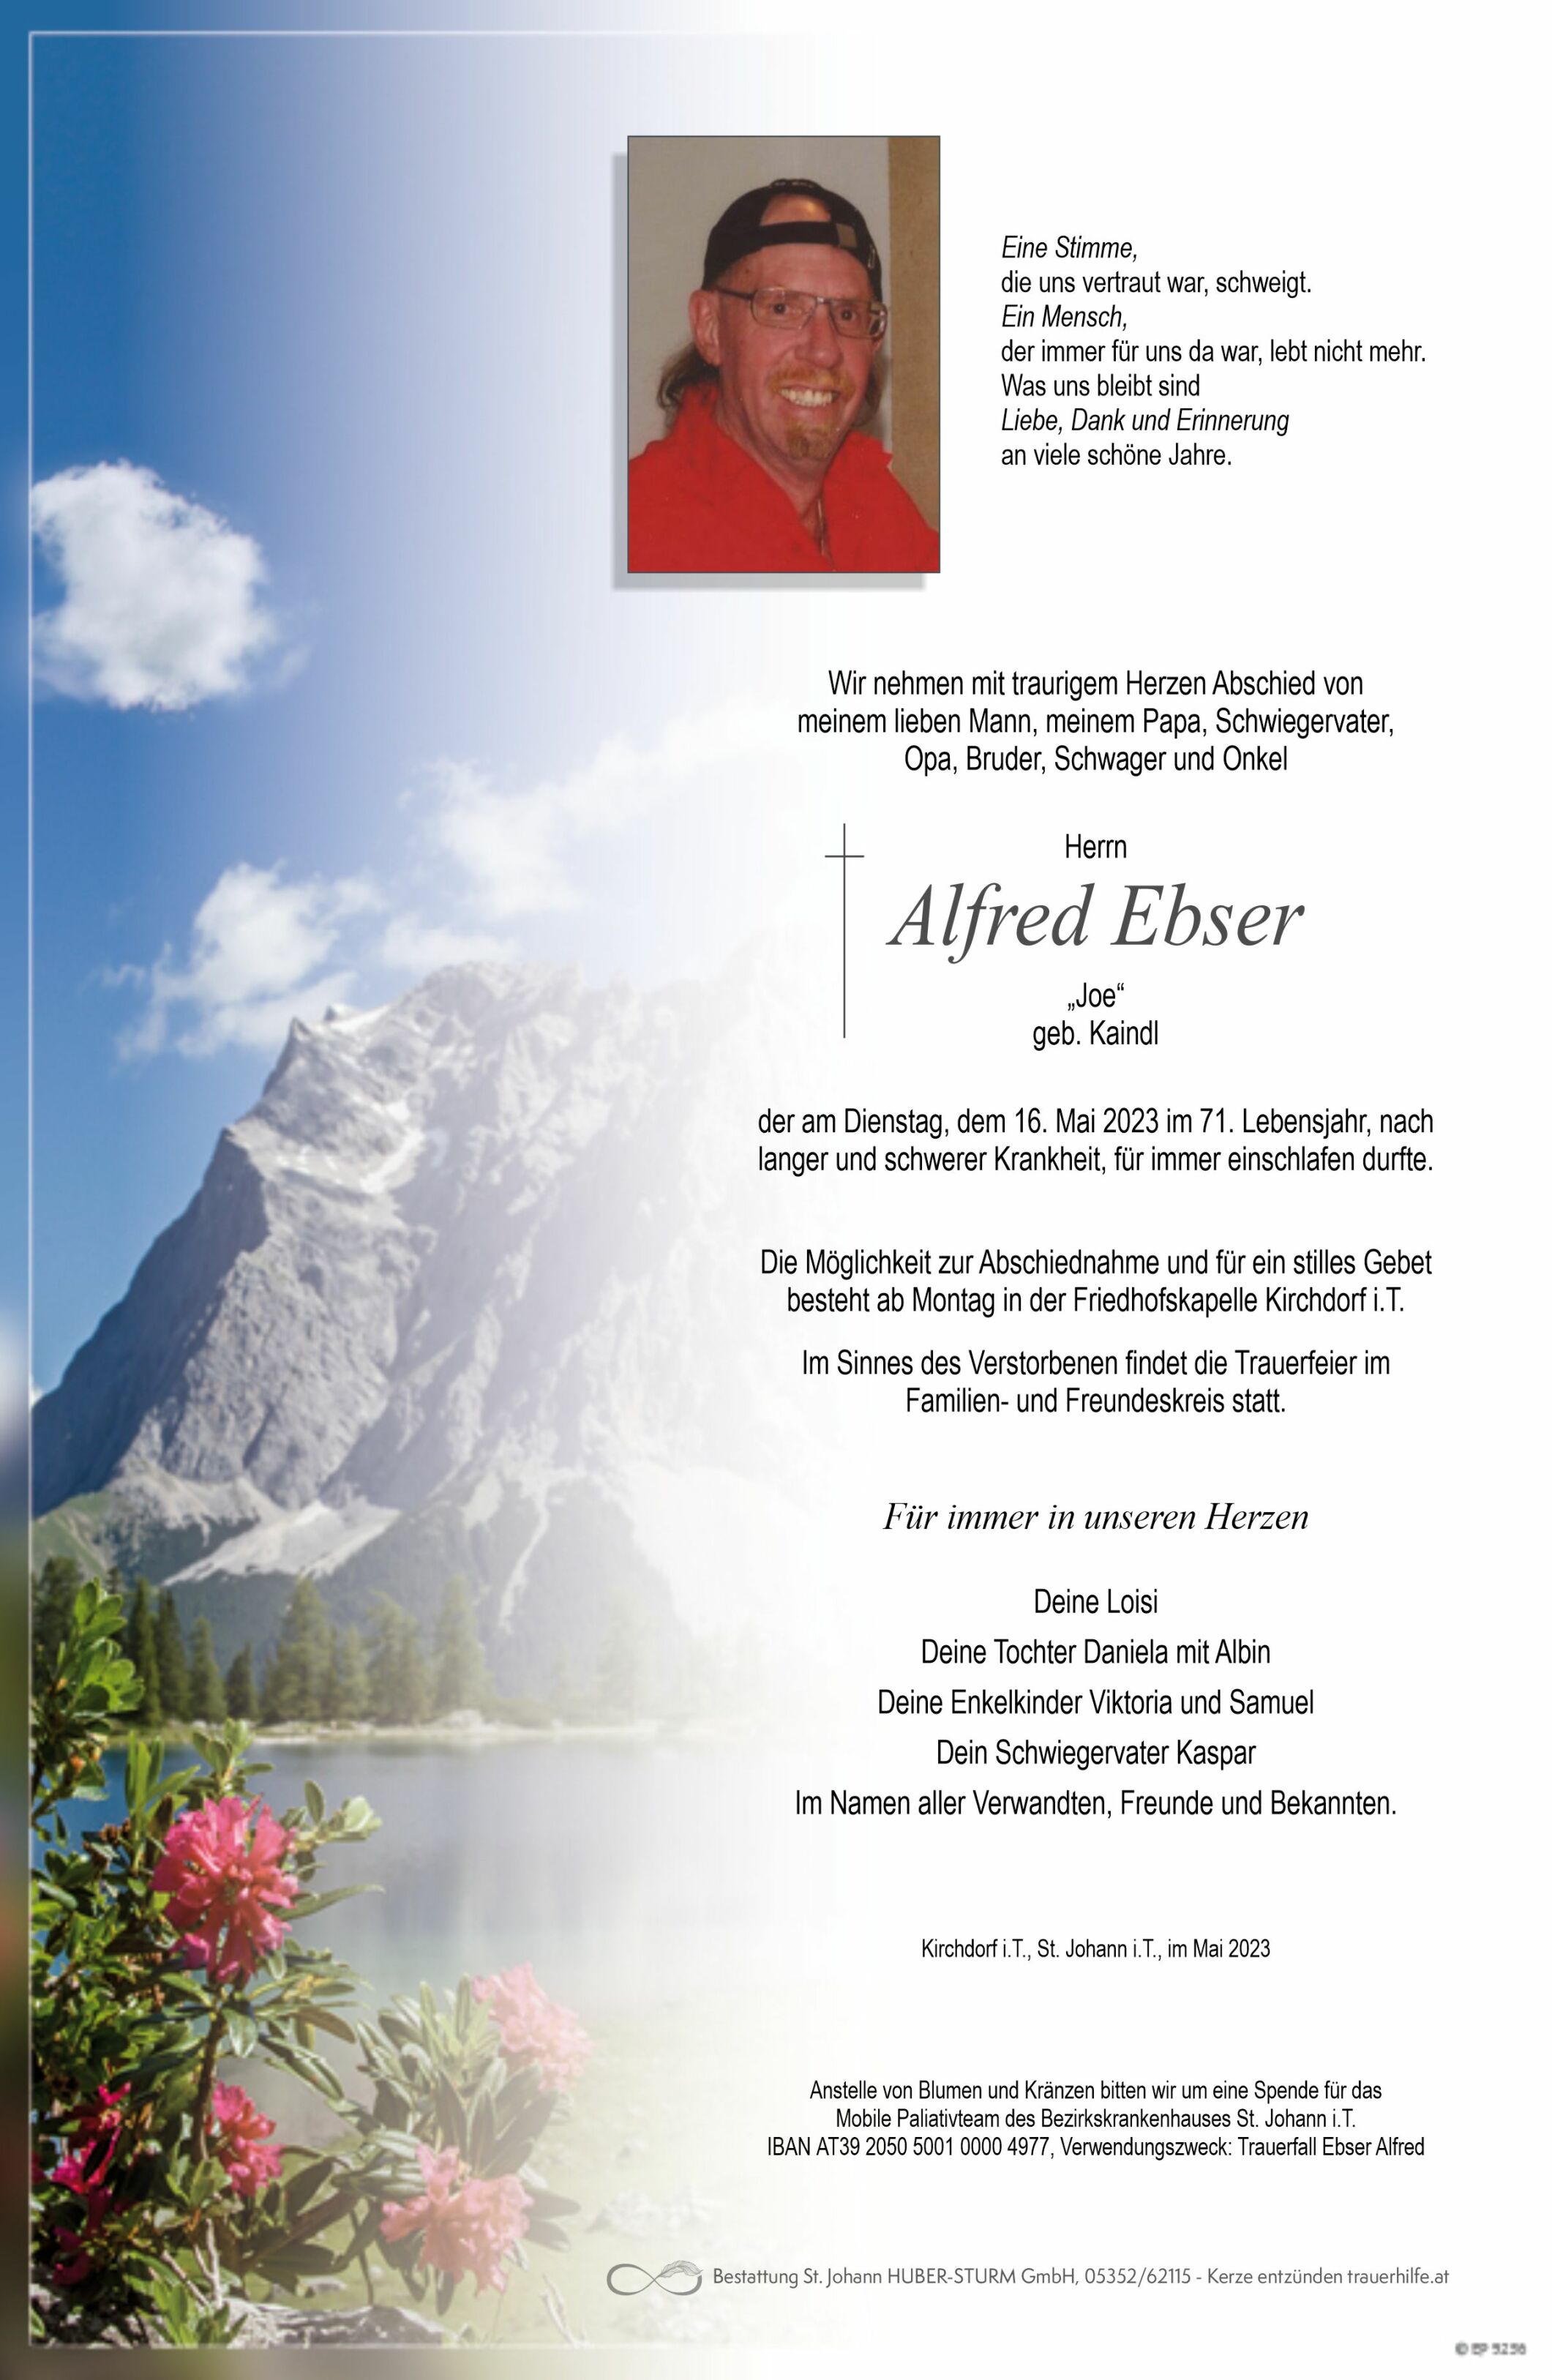 Alfred Ebser